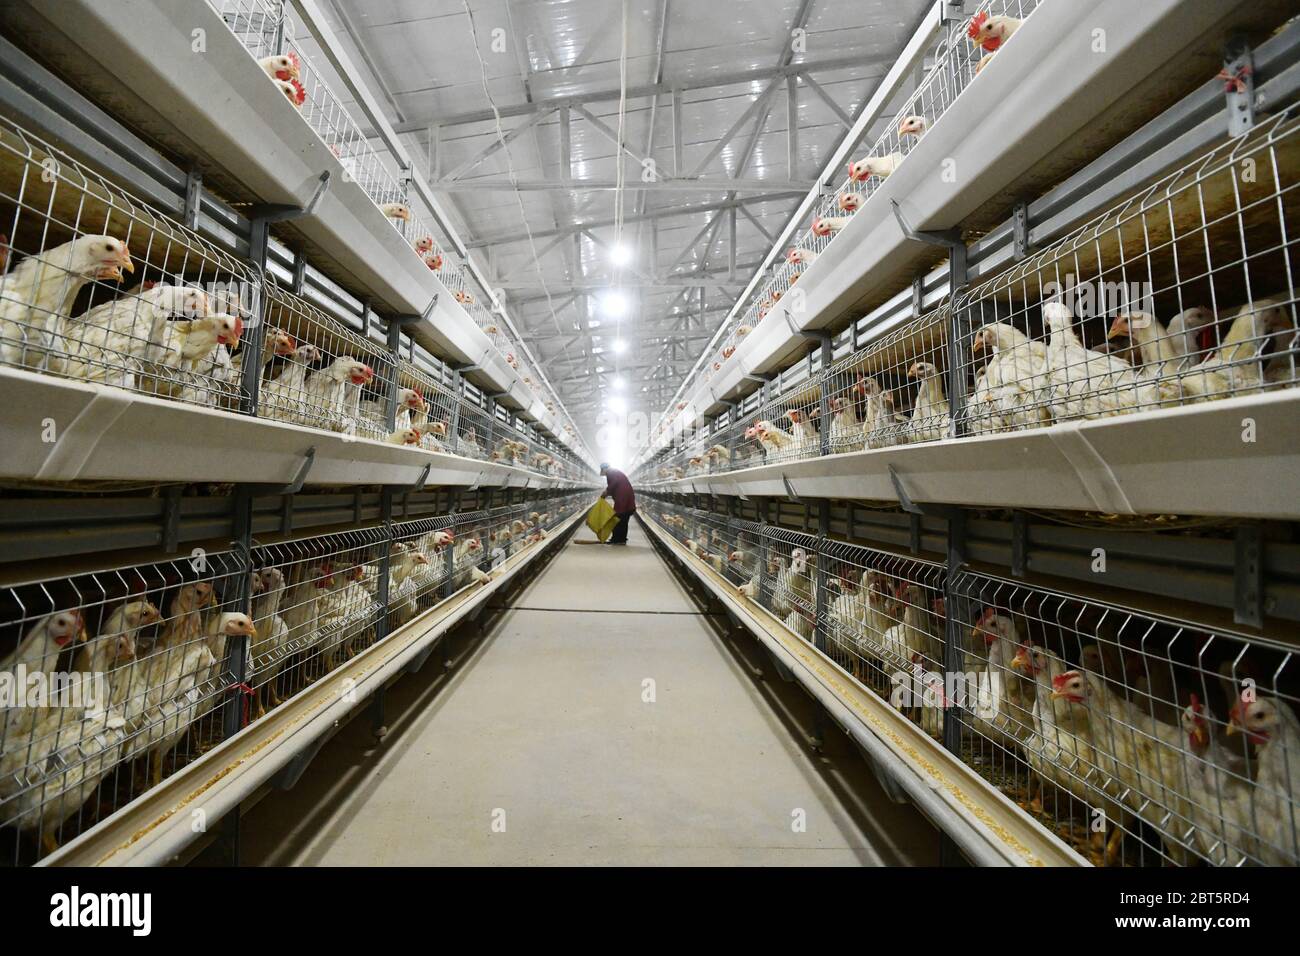 Pechino, la provincia cinese di Guizhou. 10 Mar 2020. Un agricoltore lavora in una base di allevamento di pollo nella contea di Tianzhu, nella provincia di Guizhou, nel sud-ovest della Cina, il 10 marzo 2020. PER ANDARE CON 'la Cina a stanziare 146.1 bln yuan per la riduzione della povertà locale in 2020' credito: Yang Wenbin/Xinhua/Alamy Live News Foto Stock